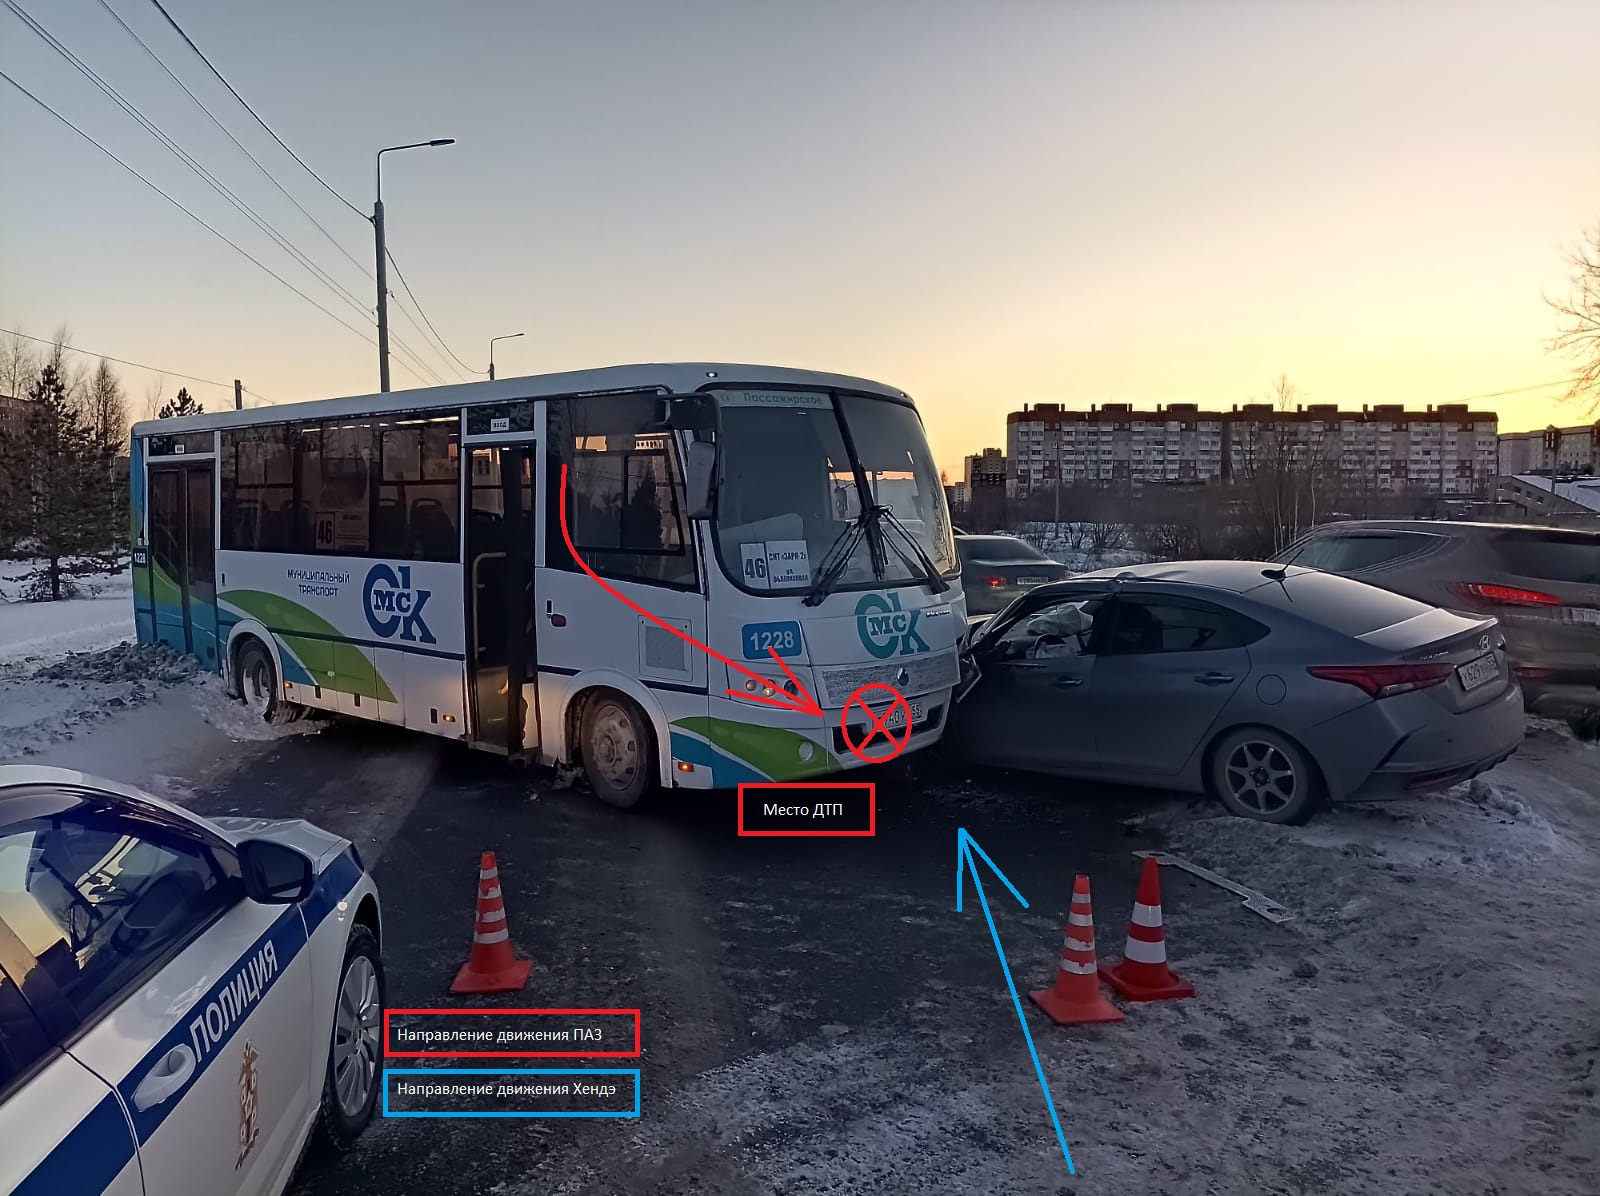 В Омске пассажирский автобус при торможении влетел в иномарку #Новости #Общество #Омск